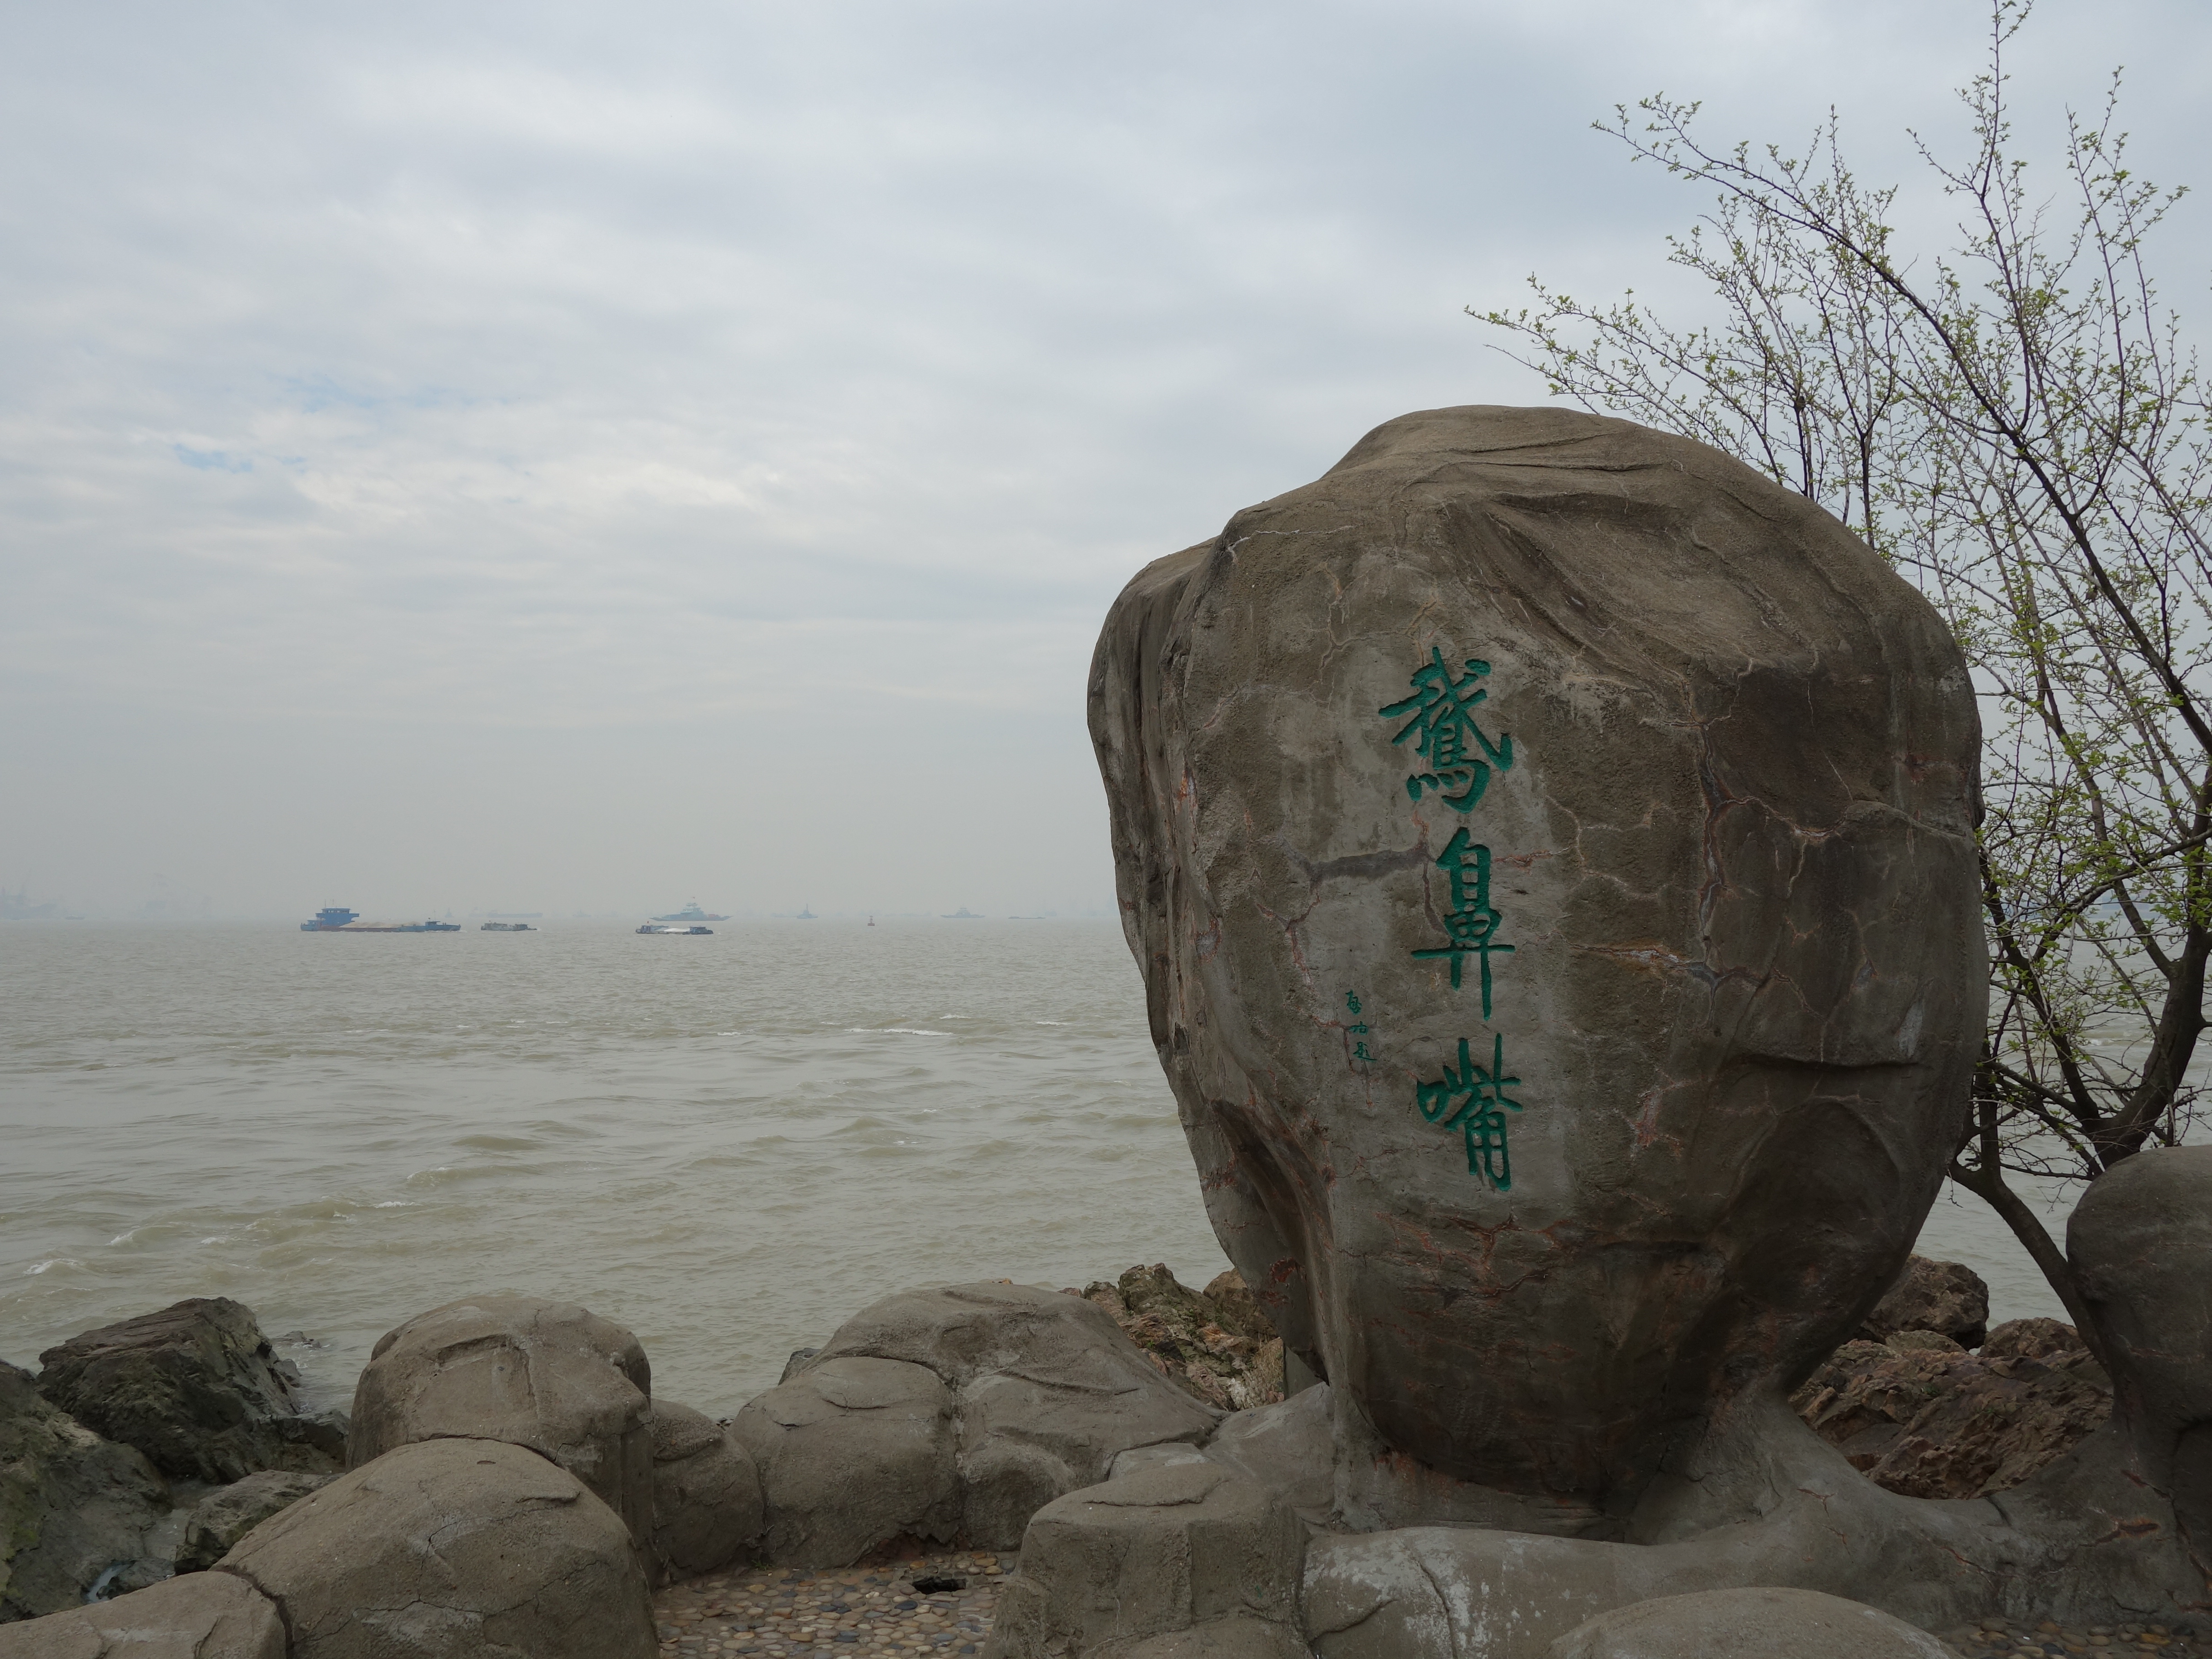 【携程攻略】江阴鹅鼻嘴公园景点,江阴鹅鼻嘴公园是个滨临长江的公园